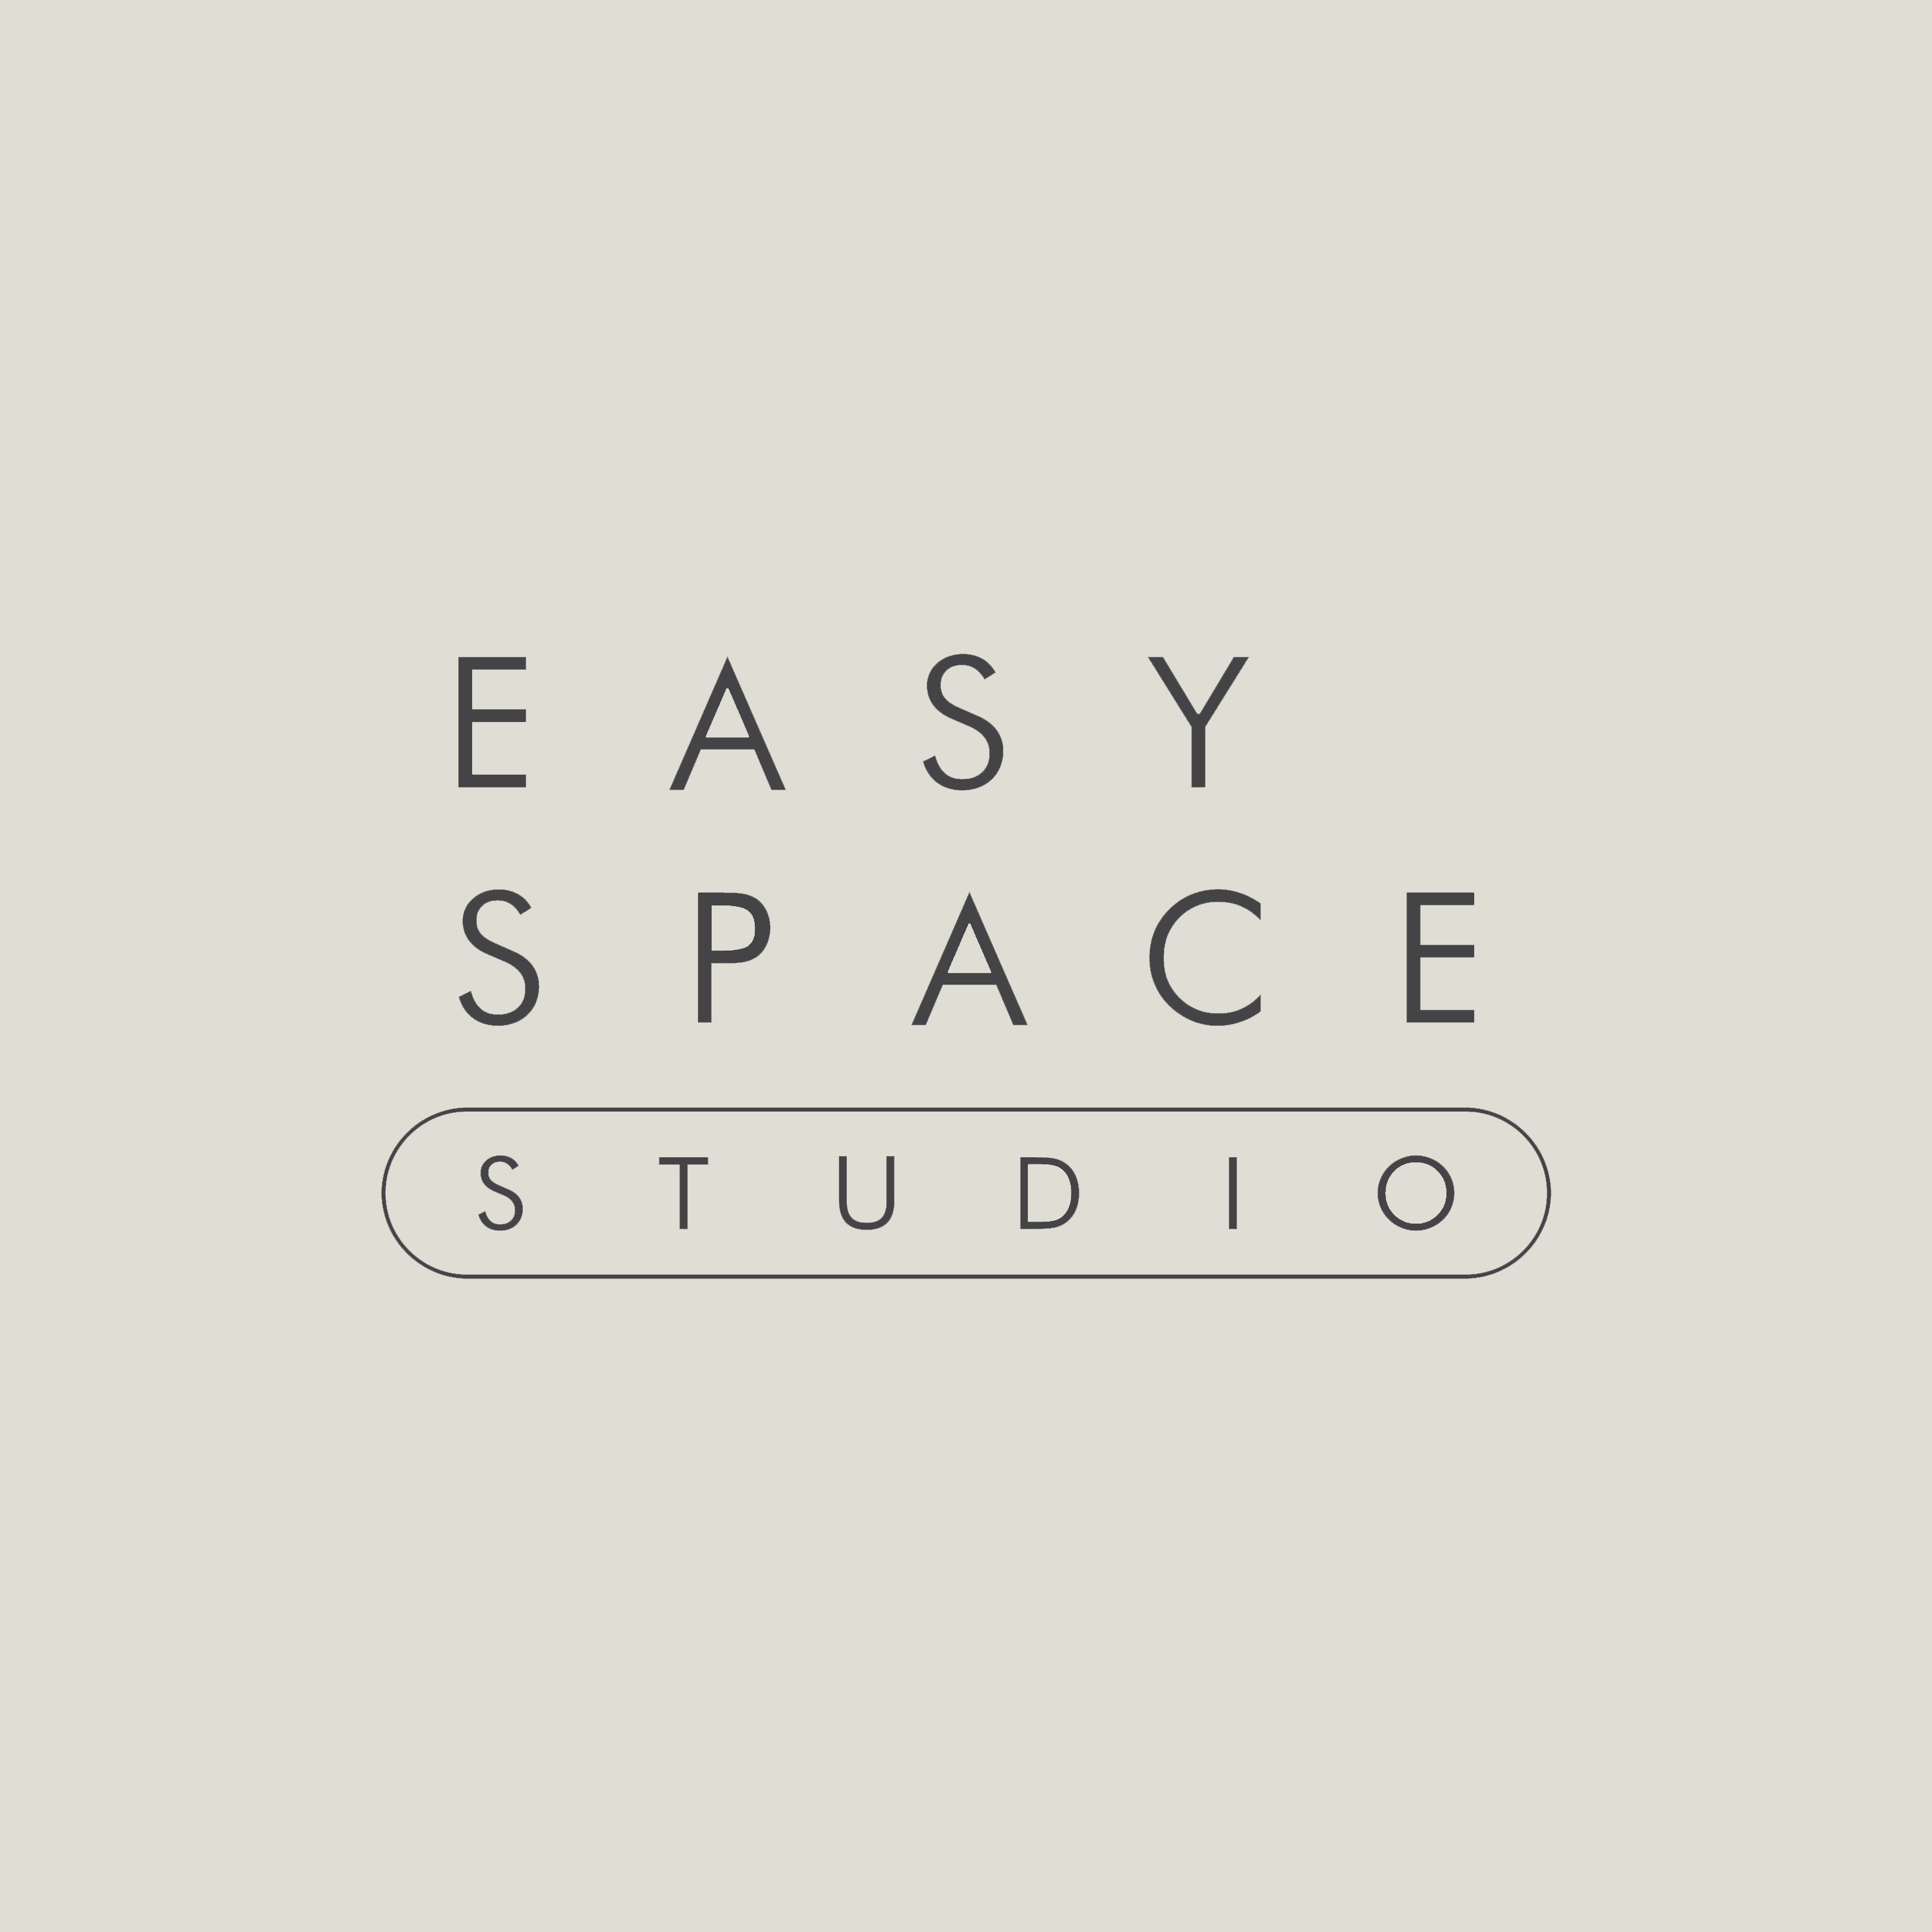 EASY SPACE STUDIO